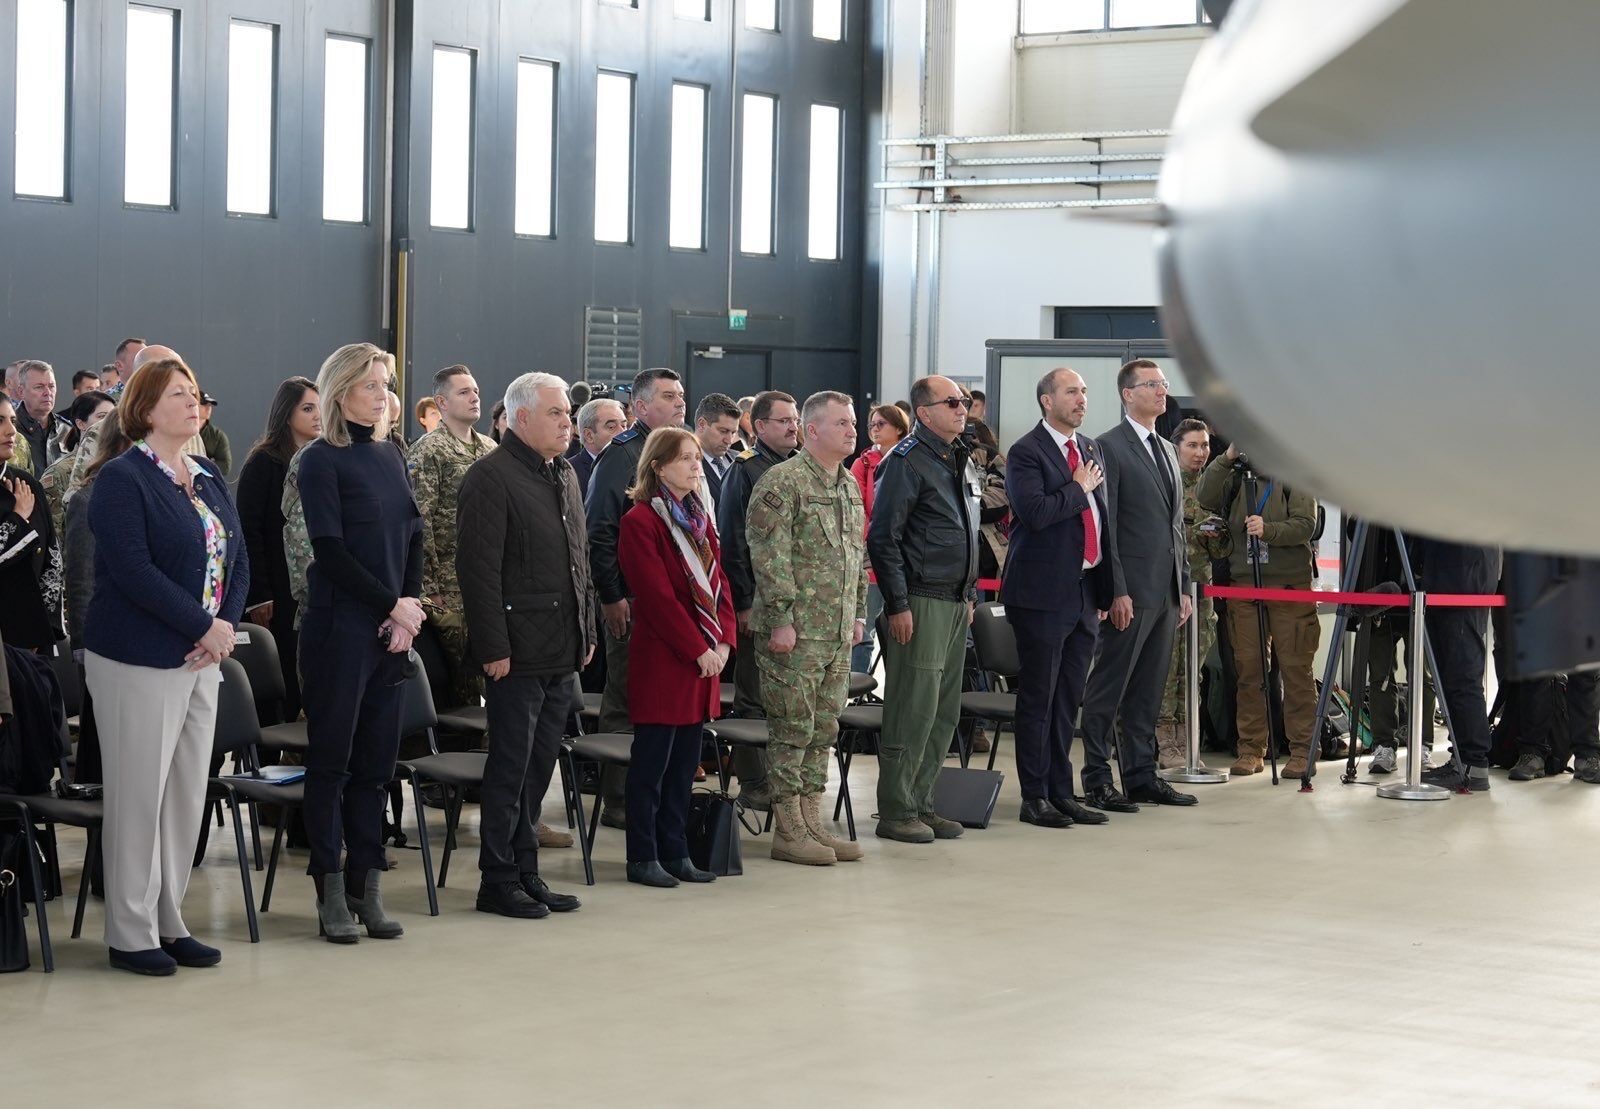 "Частично благодаря его усилиям это произошло": глава минобороны Нидерландов на открытии учебного центра F-16 вспомнила "Джуса"